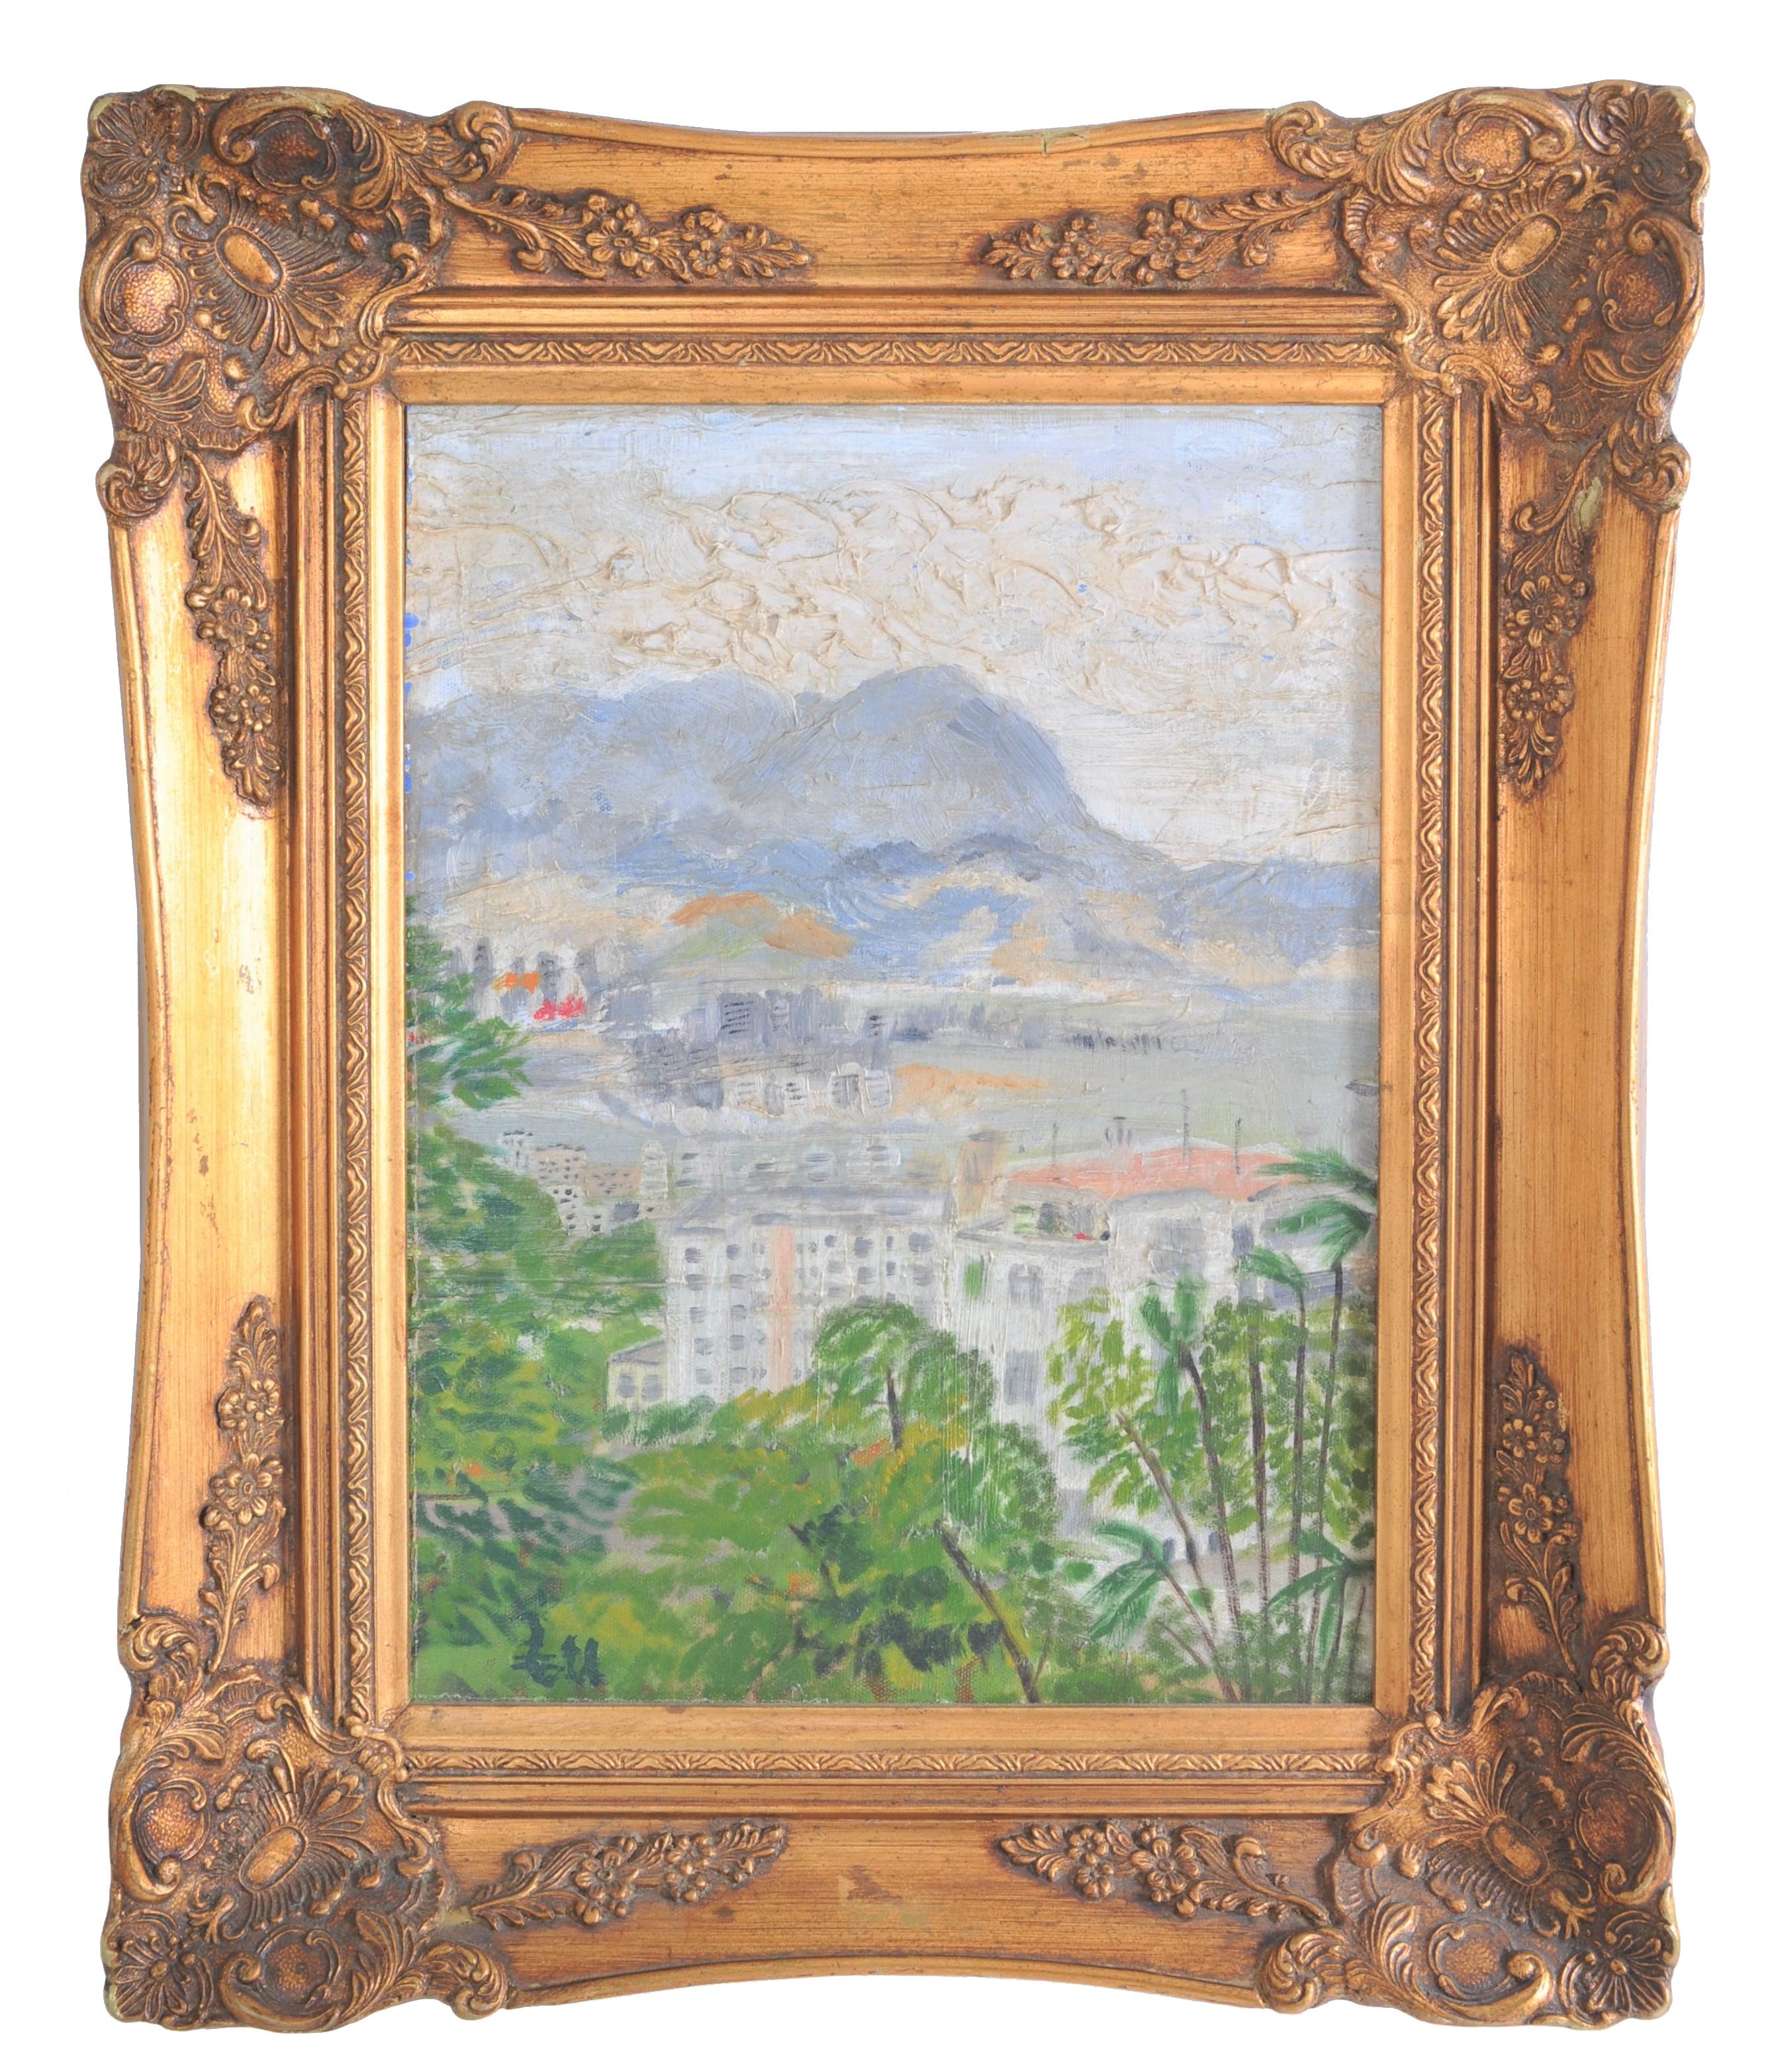 Importante peinture à l'huile originale impressionniste sur carton d'artiste, un paysage de Hong Kong vers les années 1950, par le célèbre artiste chinois Hu Shanyu (1909-1993).

Hu Shanyu est né à Guangdong, en Chine, en 1909. Il est entré à